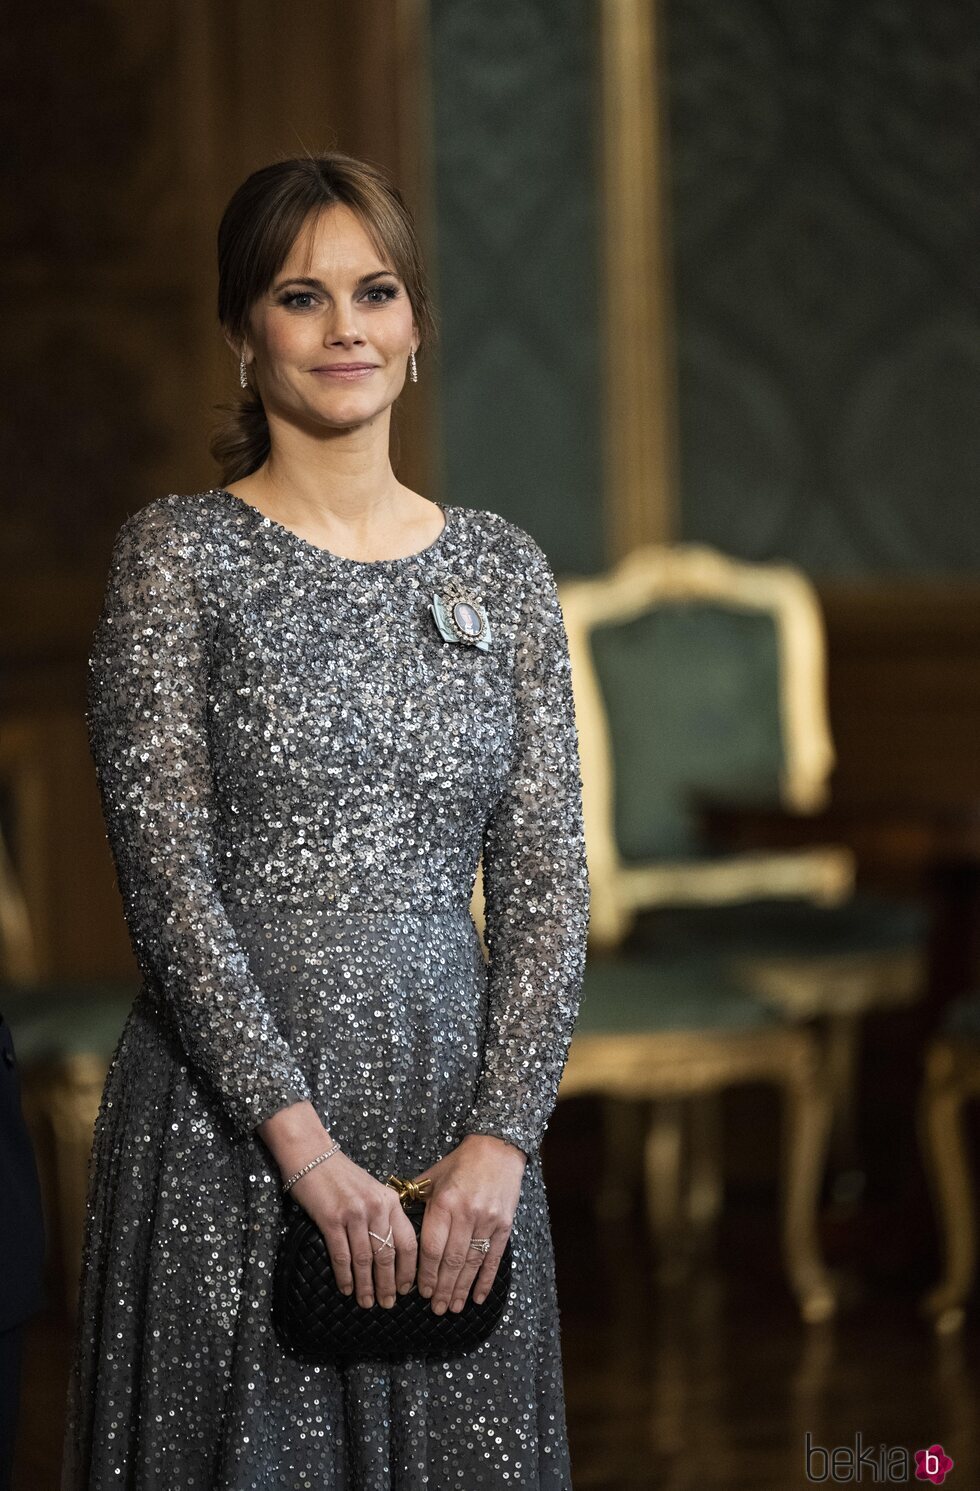 Sofia de Suecia en la cena de gala por el comienzo del año del Jubileo del Rey de Suecia